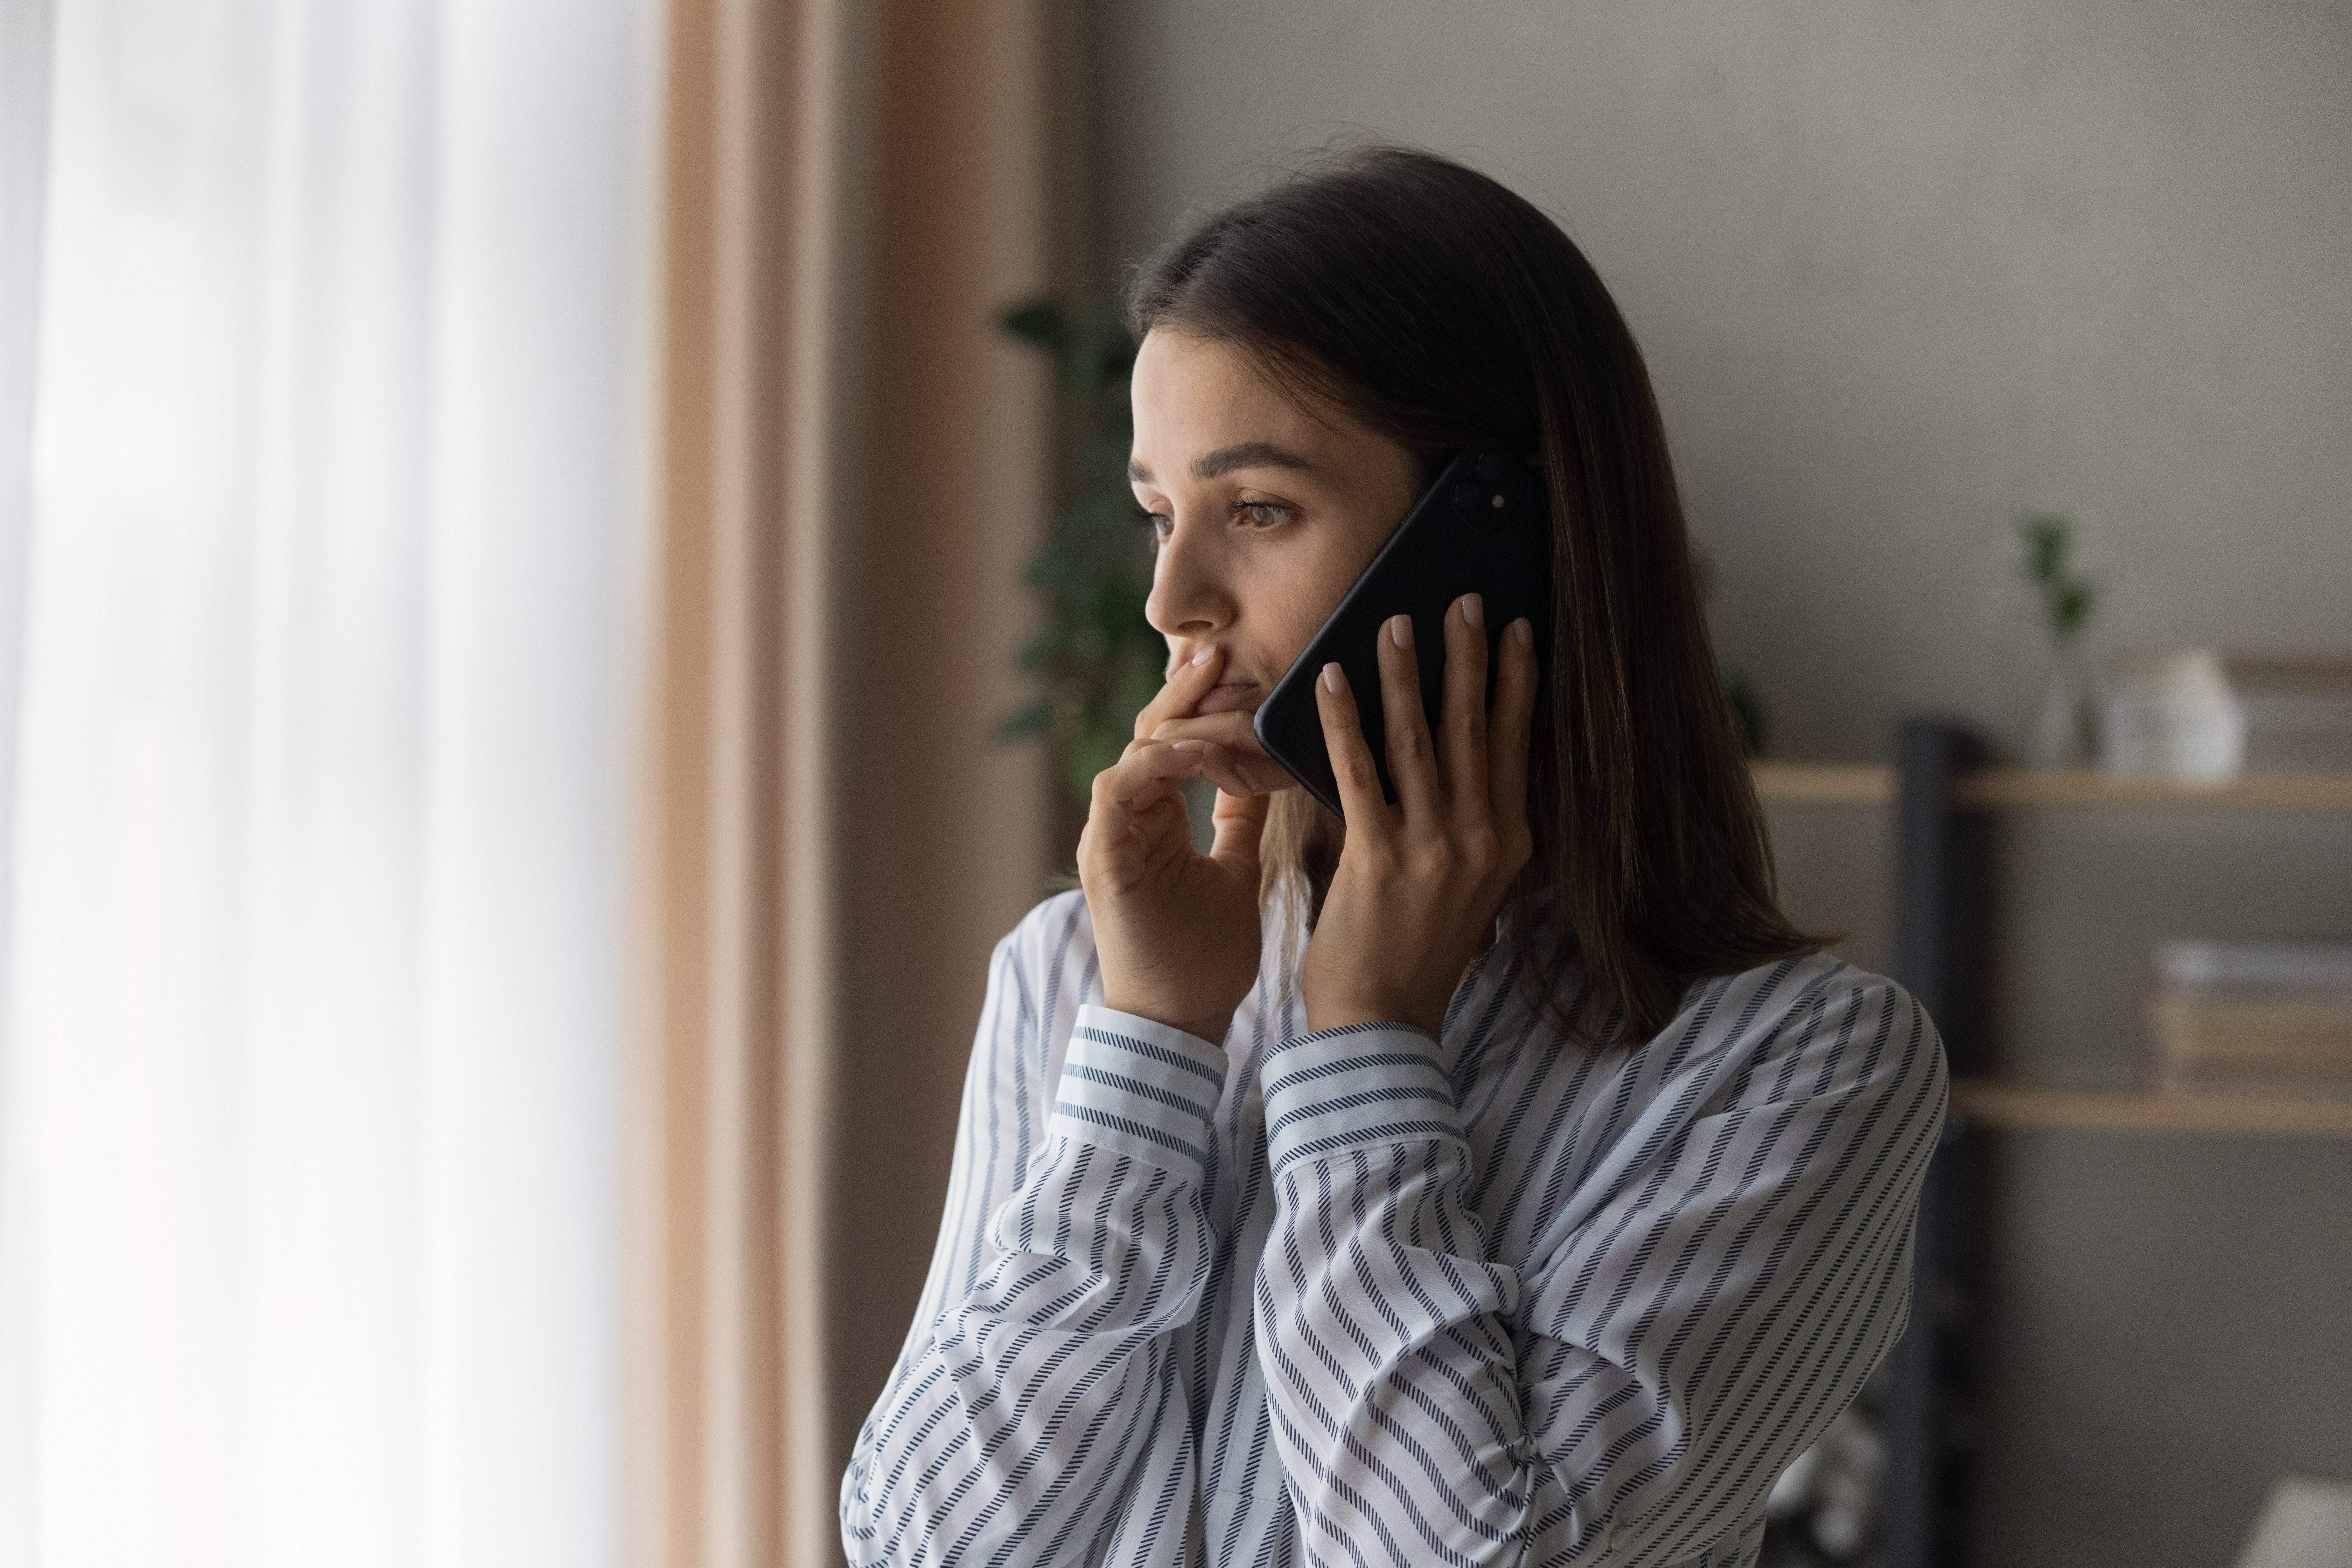 Une jeune fille au téléphone, l'air inquiet | Source : Shutterstock